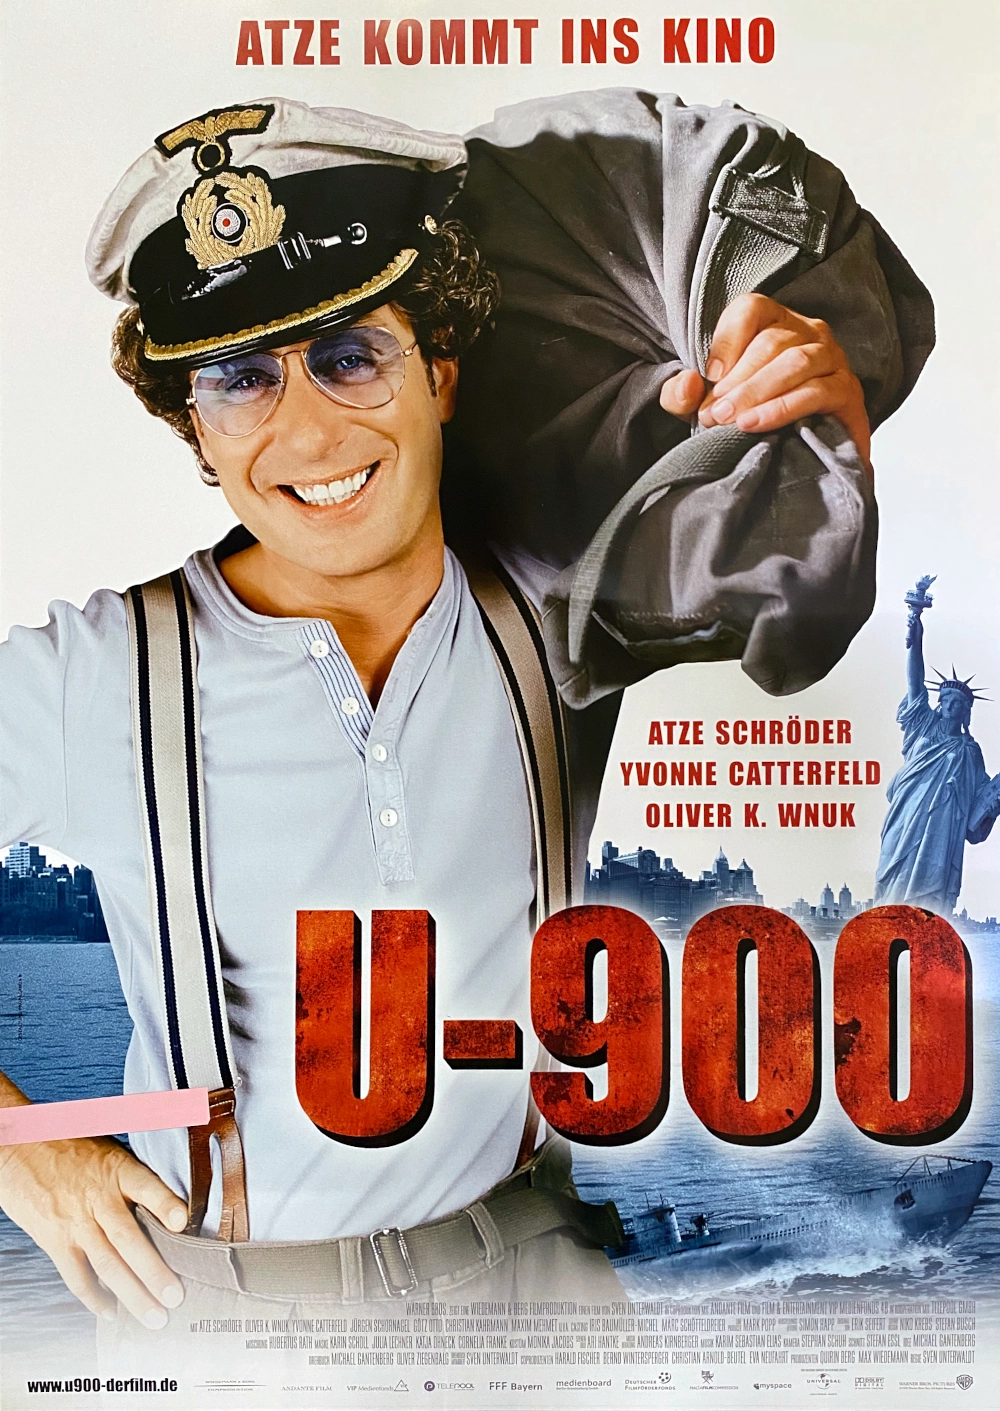 U-900 2008